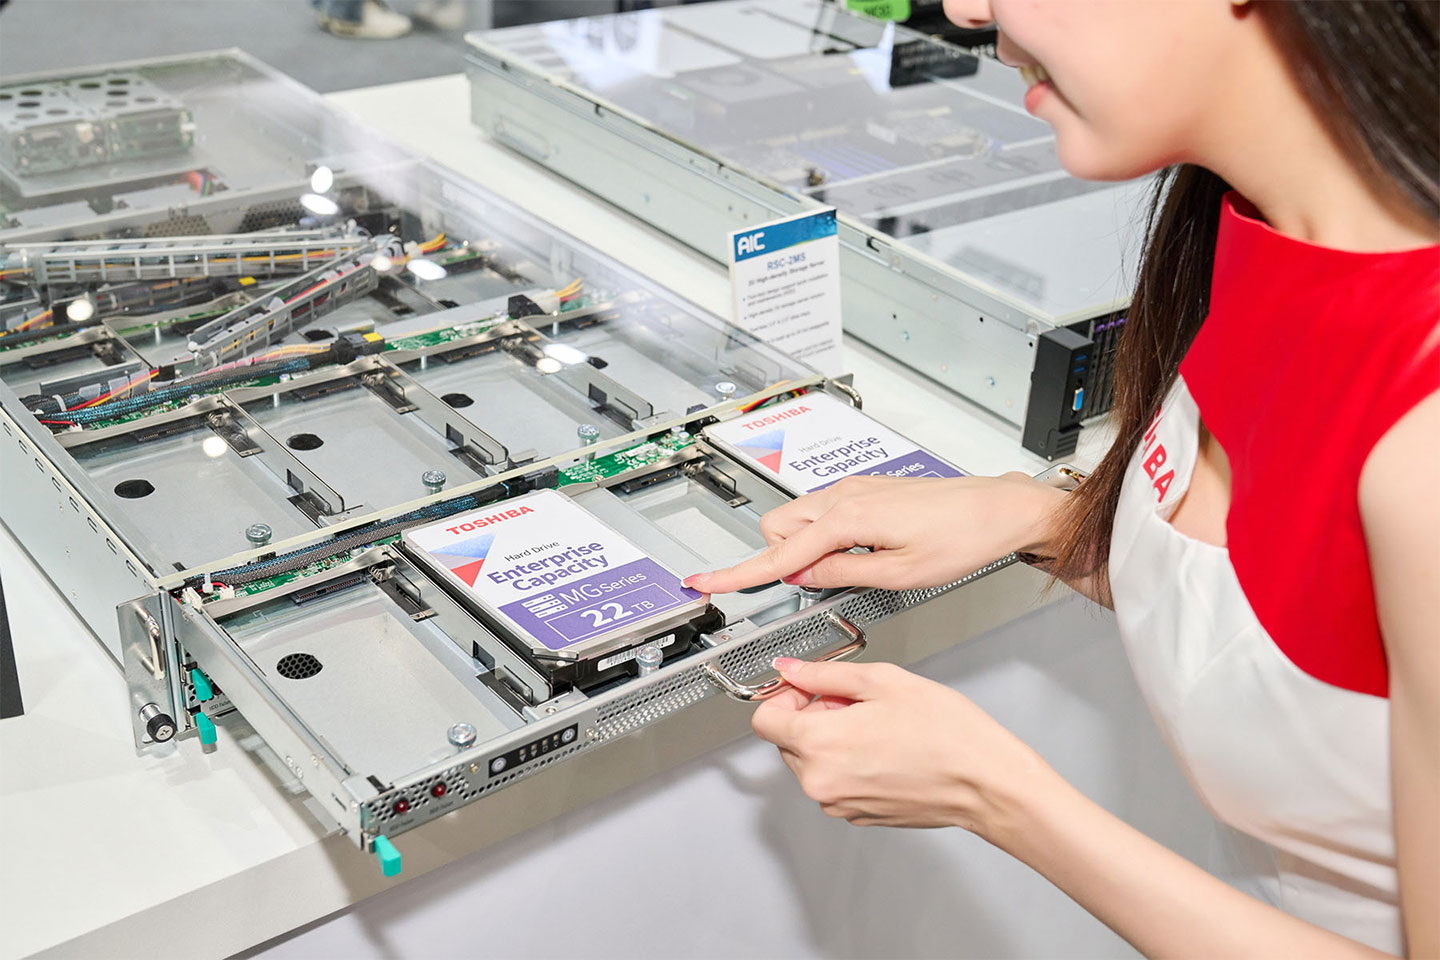 RSC-2MS 採用托盤式計，鬆開卡榫就能讓單層硬碟槽向外拉出，方便進行硬碟的，而且過程完全無需動用任何工具。